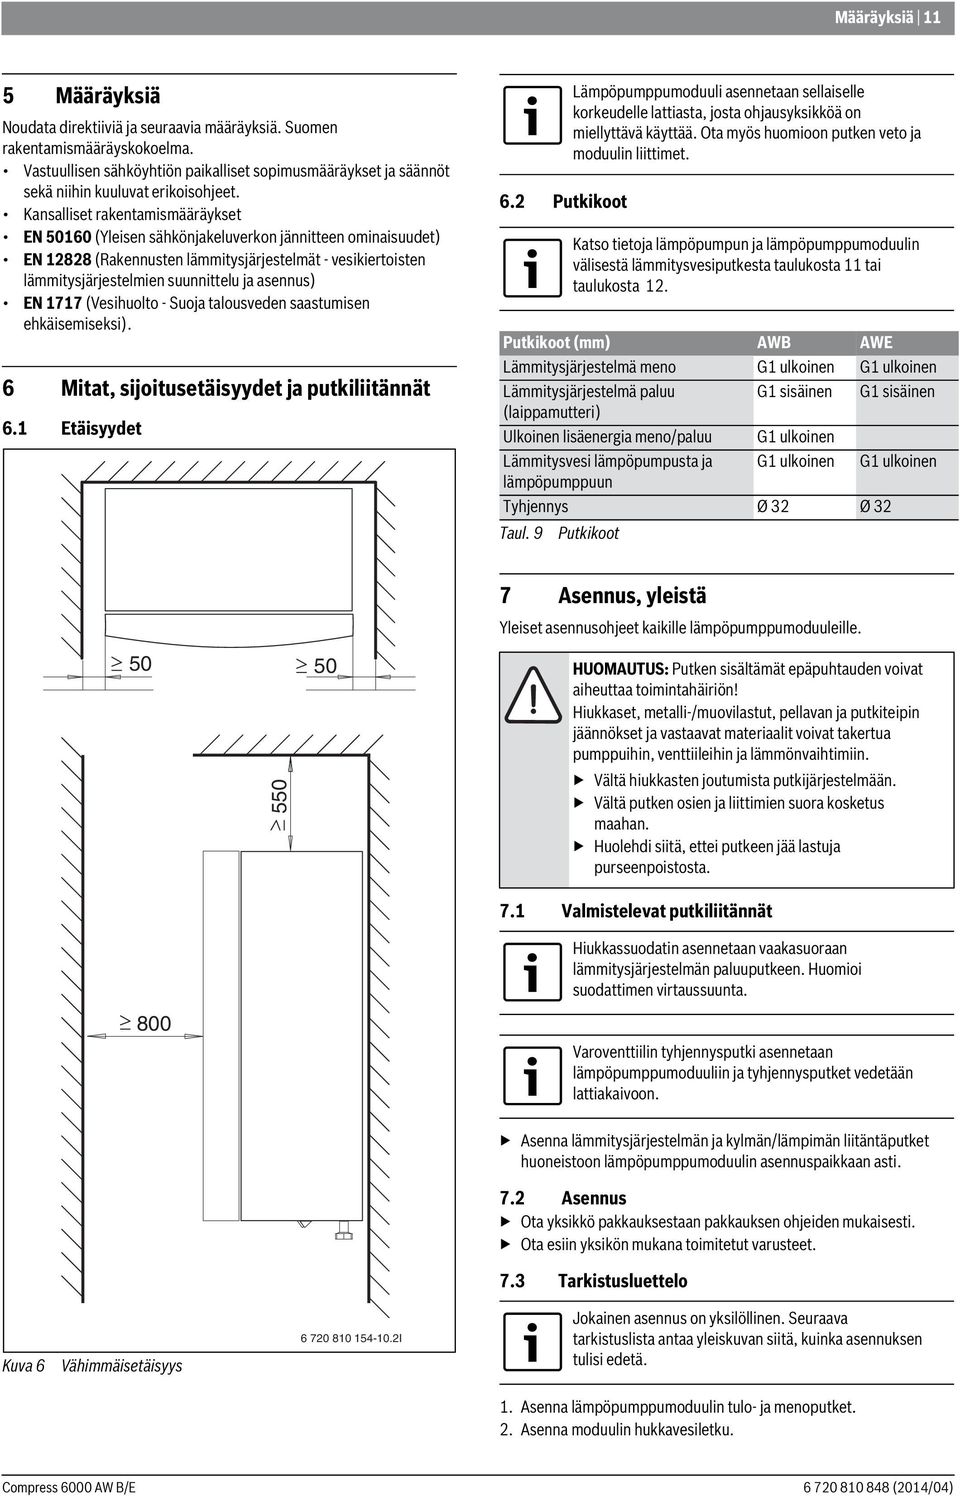 Kansalliset rakentamismääräykset EN 5060 (Yleisen sähkönjakeluverkon jännitteen ominaisuudet) EN 88 (Rakennusten lämmitysjärjestelmät - vesikiertoisten lämmitysjärjestelmien suunnittelu ja asennus)